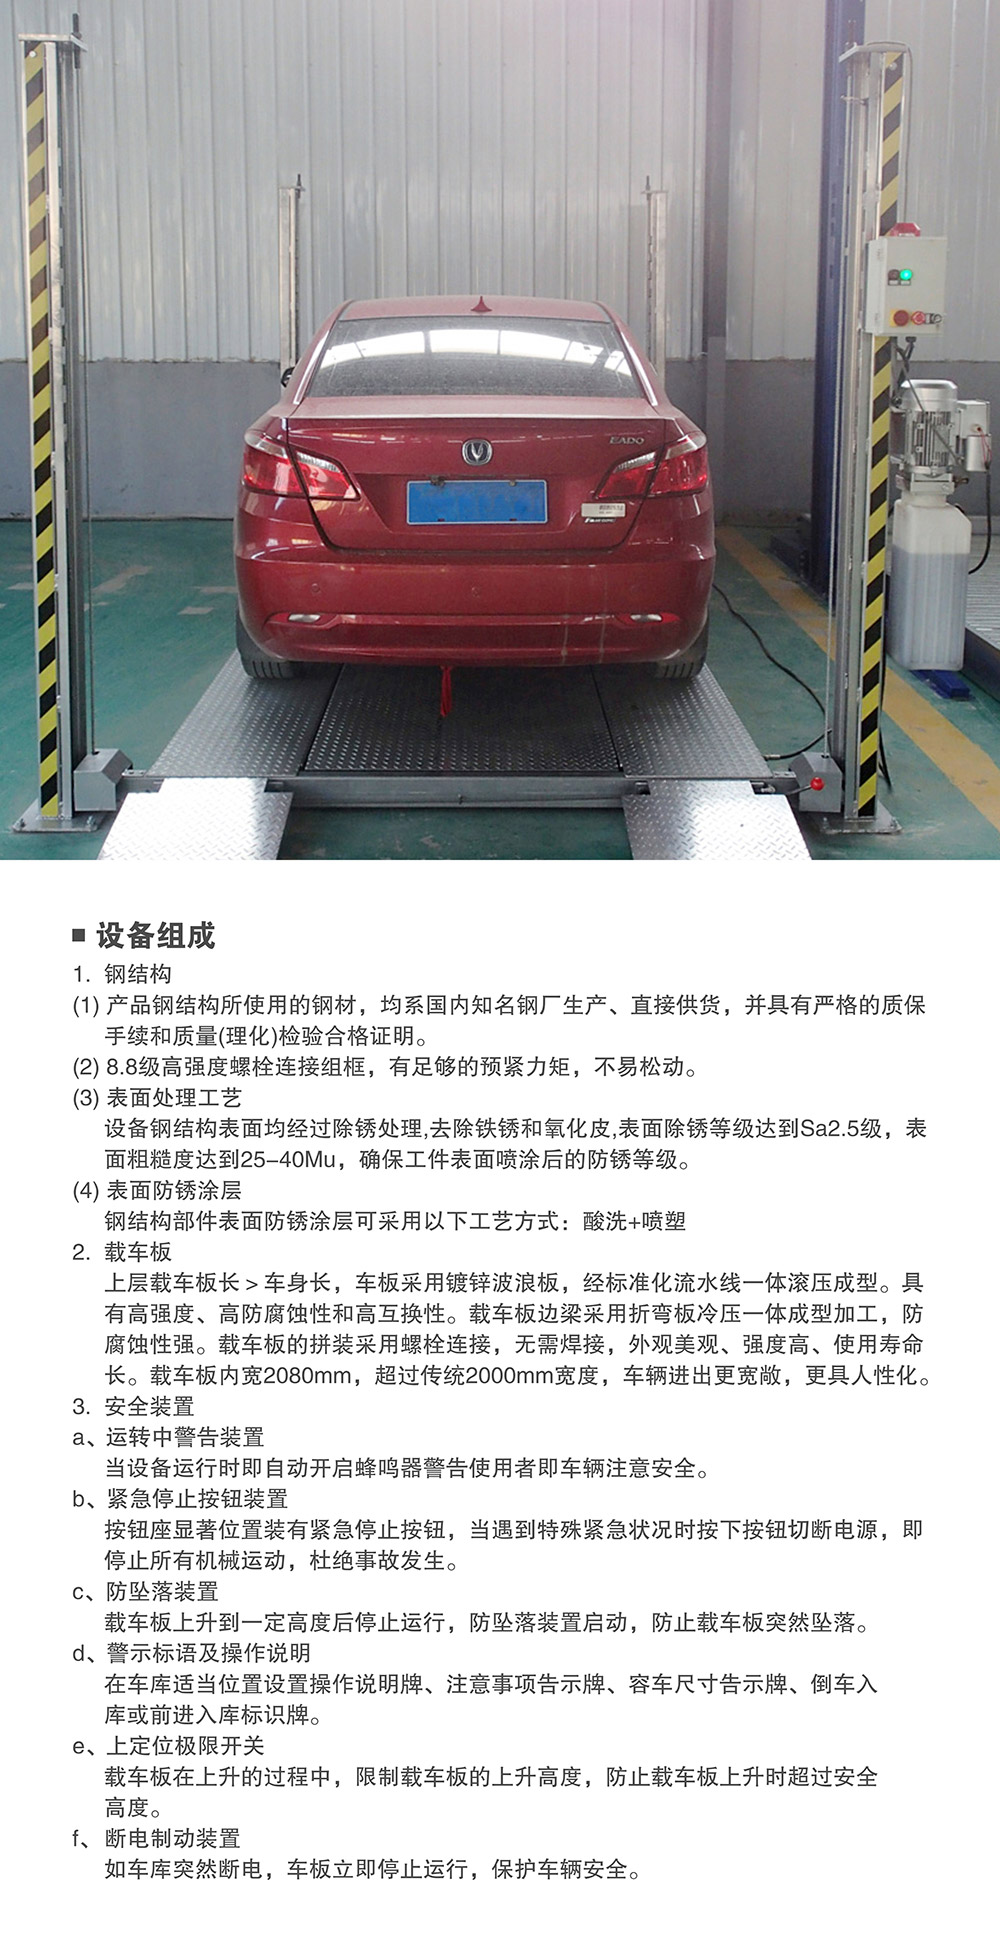 贵州贵阳四柱简易升降立体停车设备组成.jpg